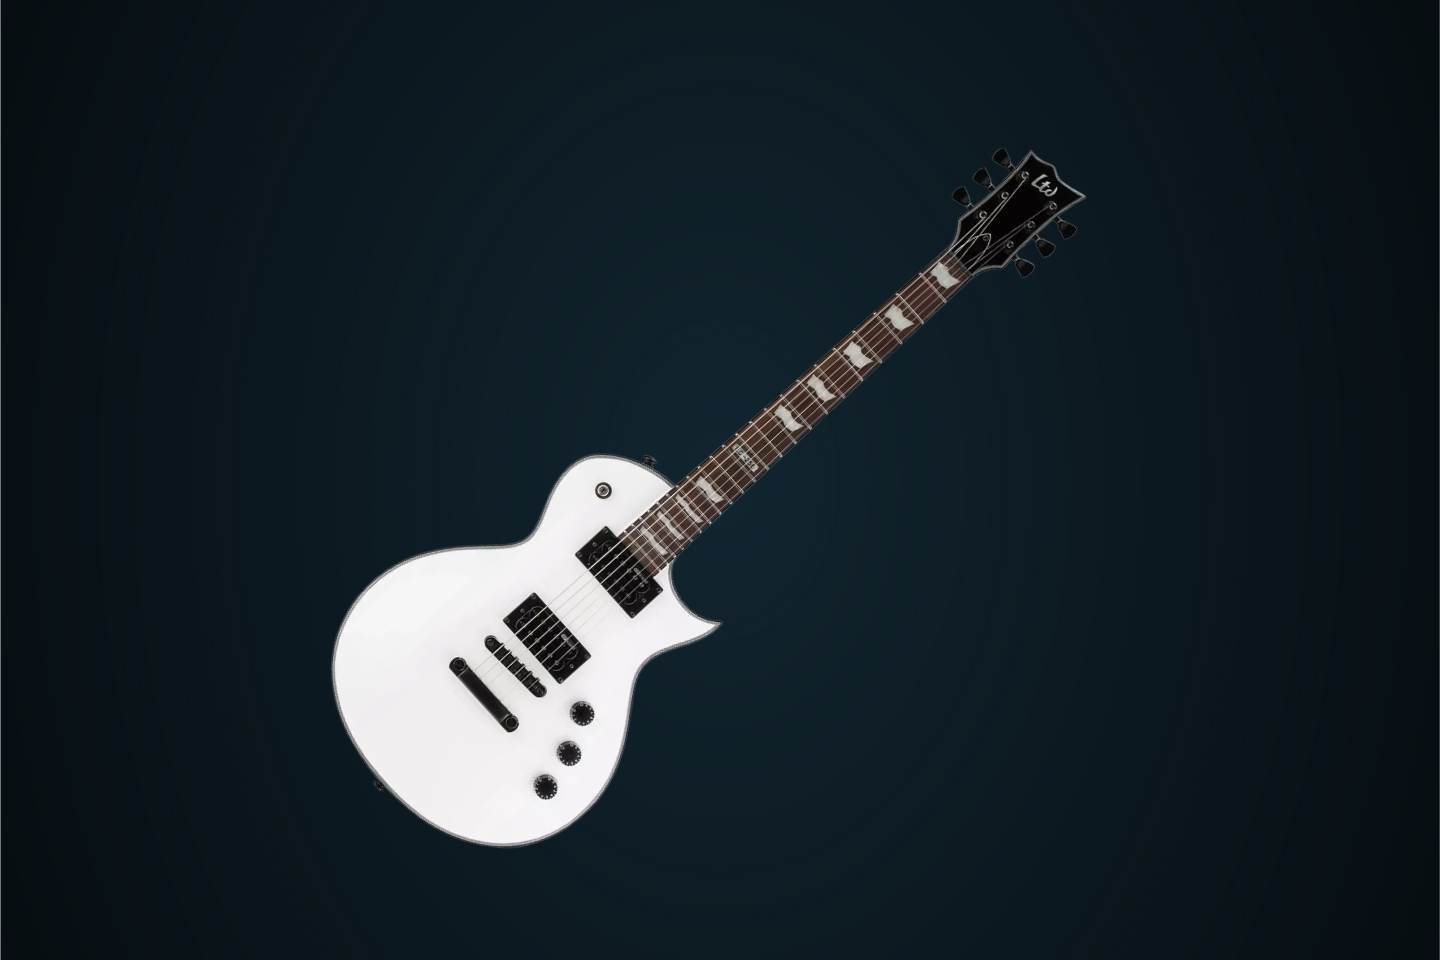 Guitarra elétrica LTD EC Series EC-256 de mogno snow white com diapasão de jatobá assado